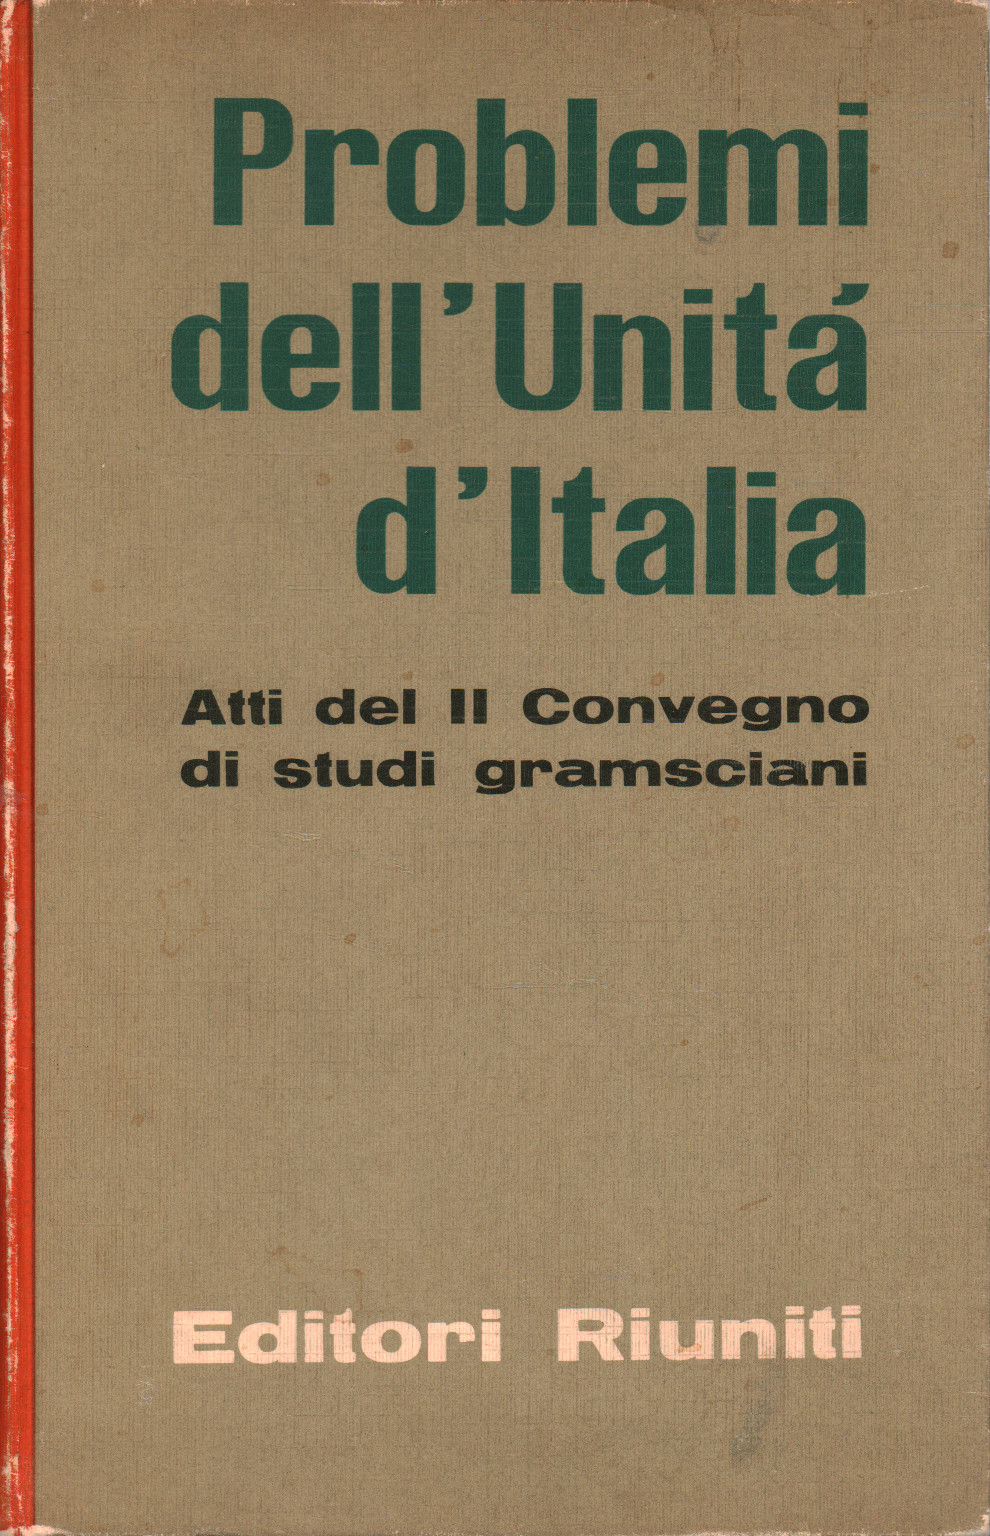 Problemi dell'Unità d'Italia, s.a.